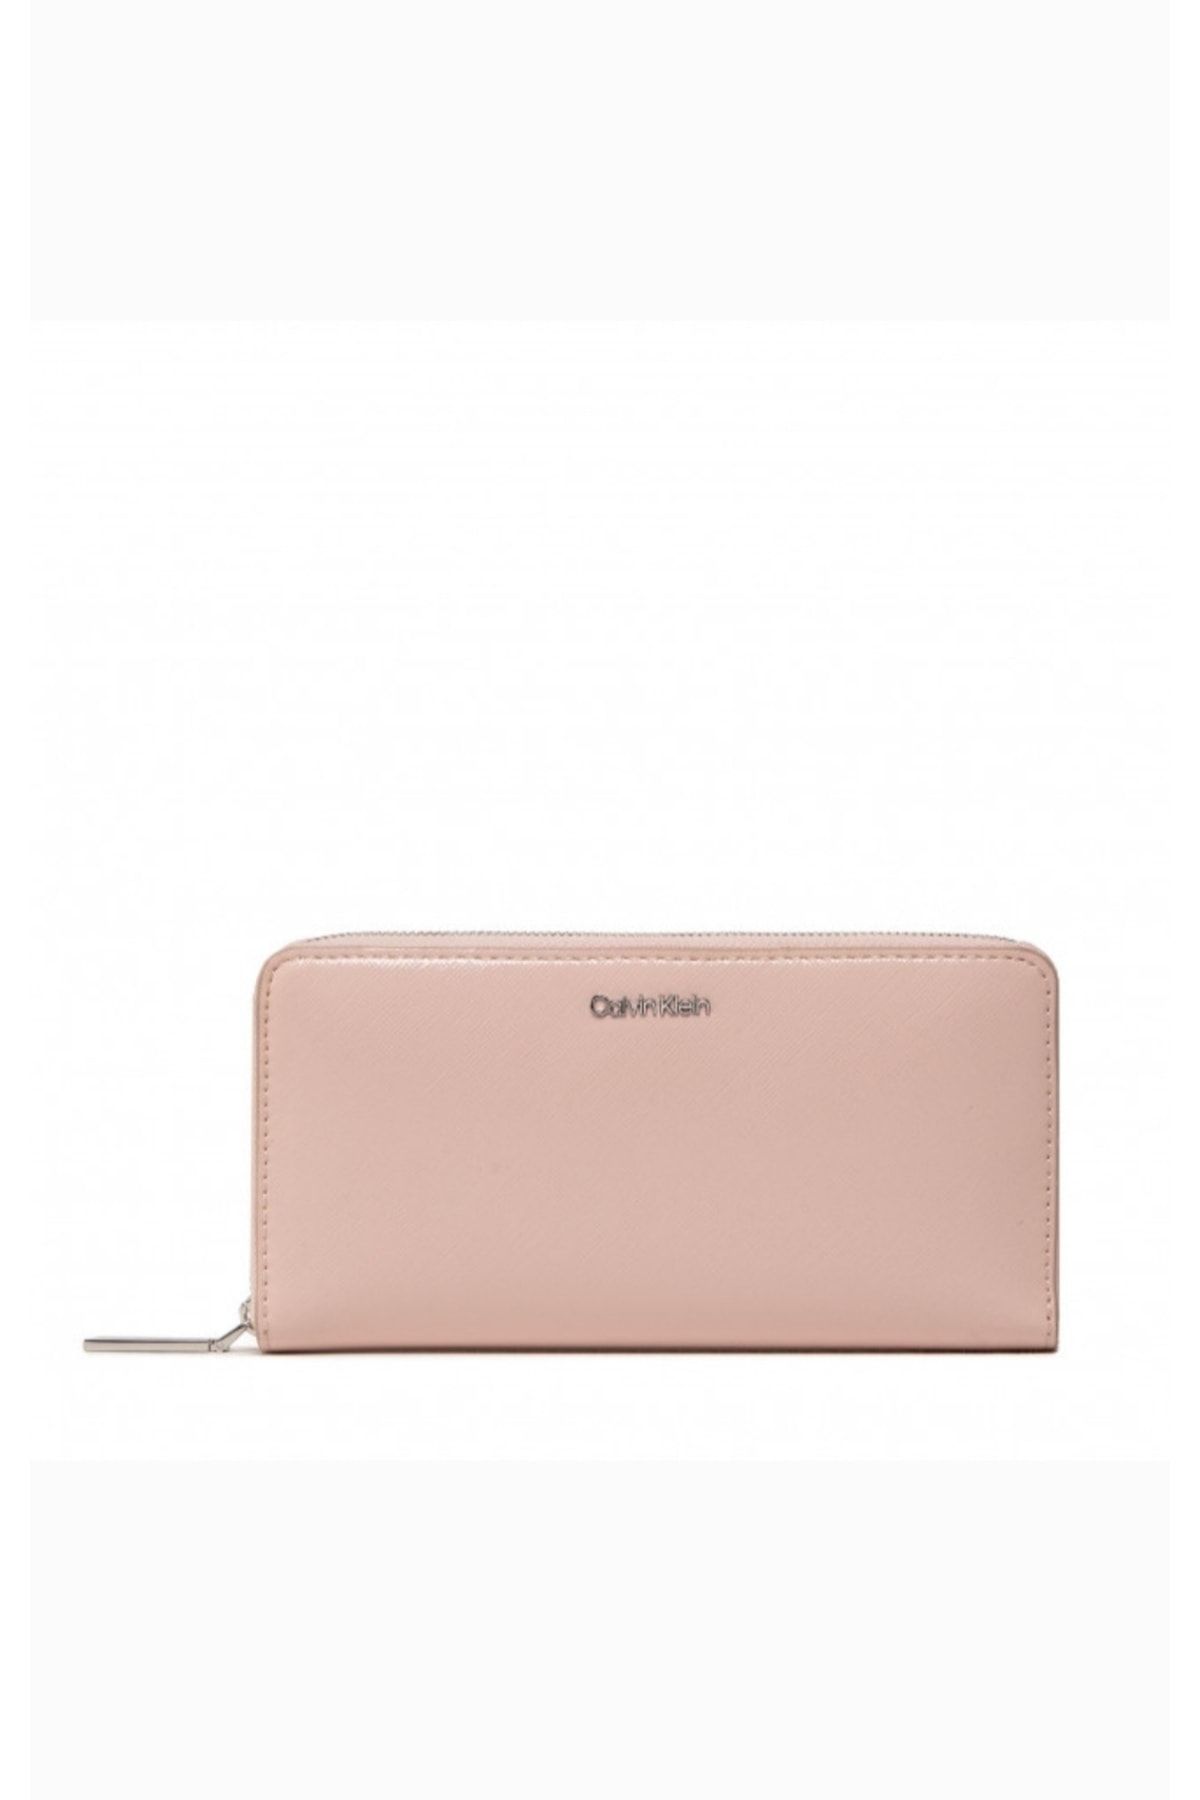 Calvin Klein Ck Must Z/a Wallet Lg Saffiano